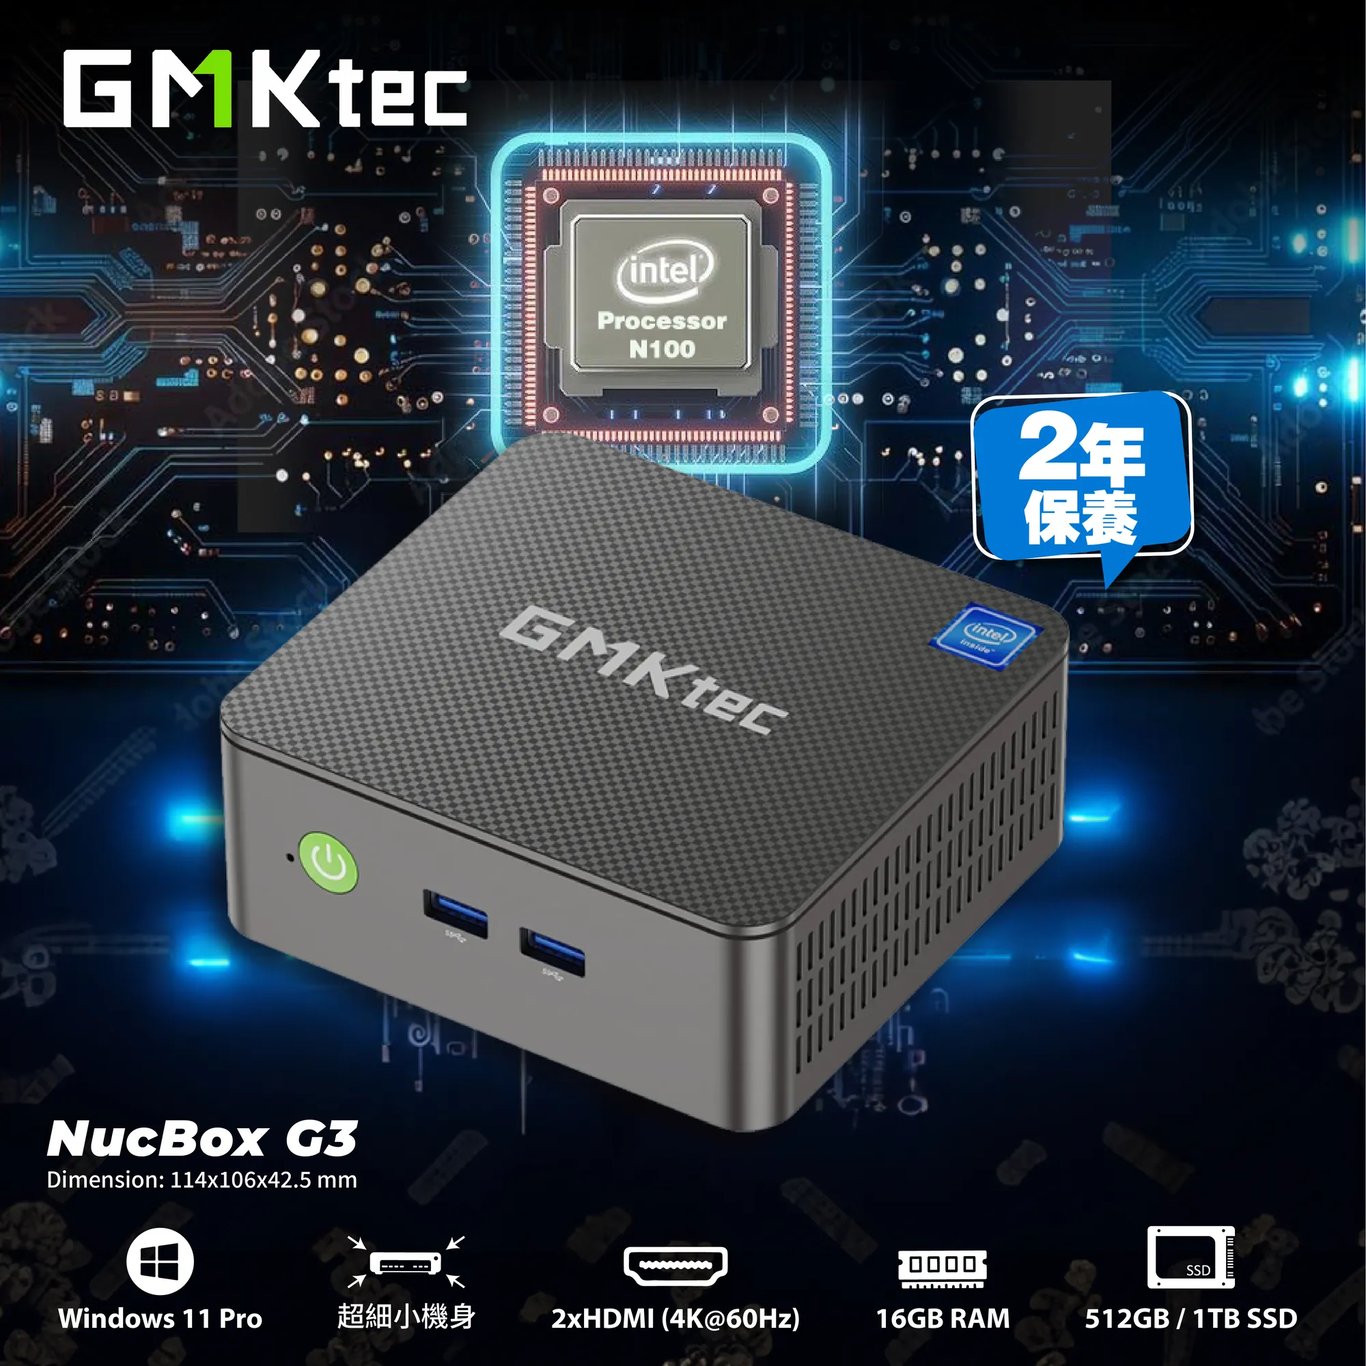 GMKtec NucBox G3 Mini PC 迷你電腦 (Intel N100、16GB RAM、1TB SSD、Window 11 Pro)